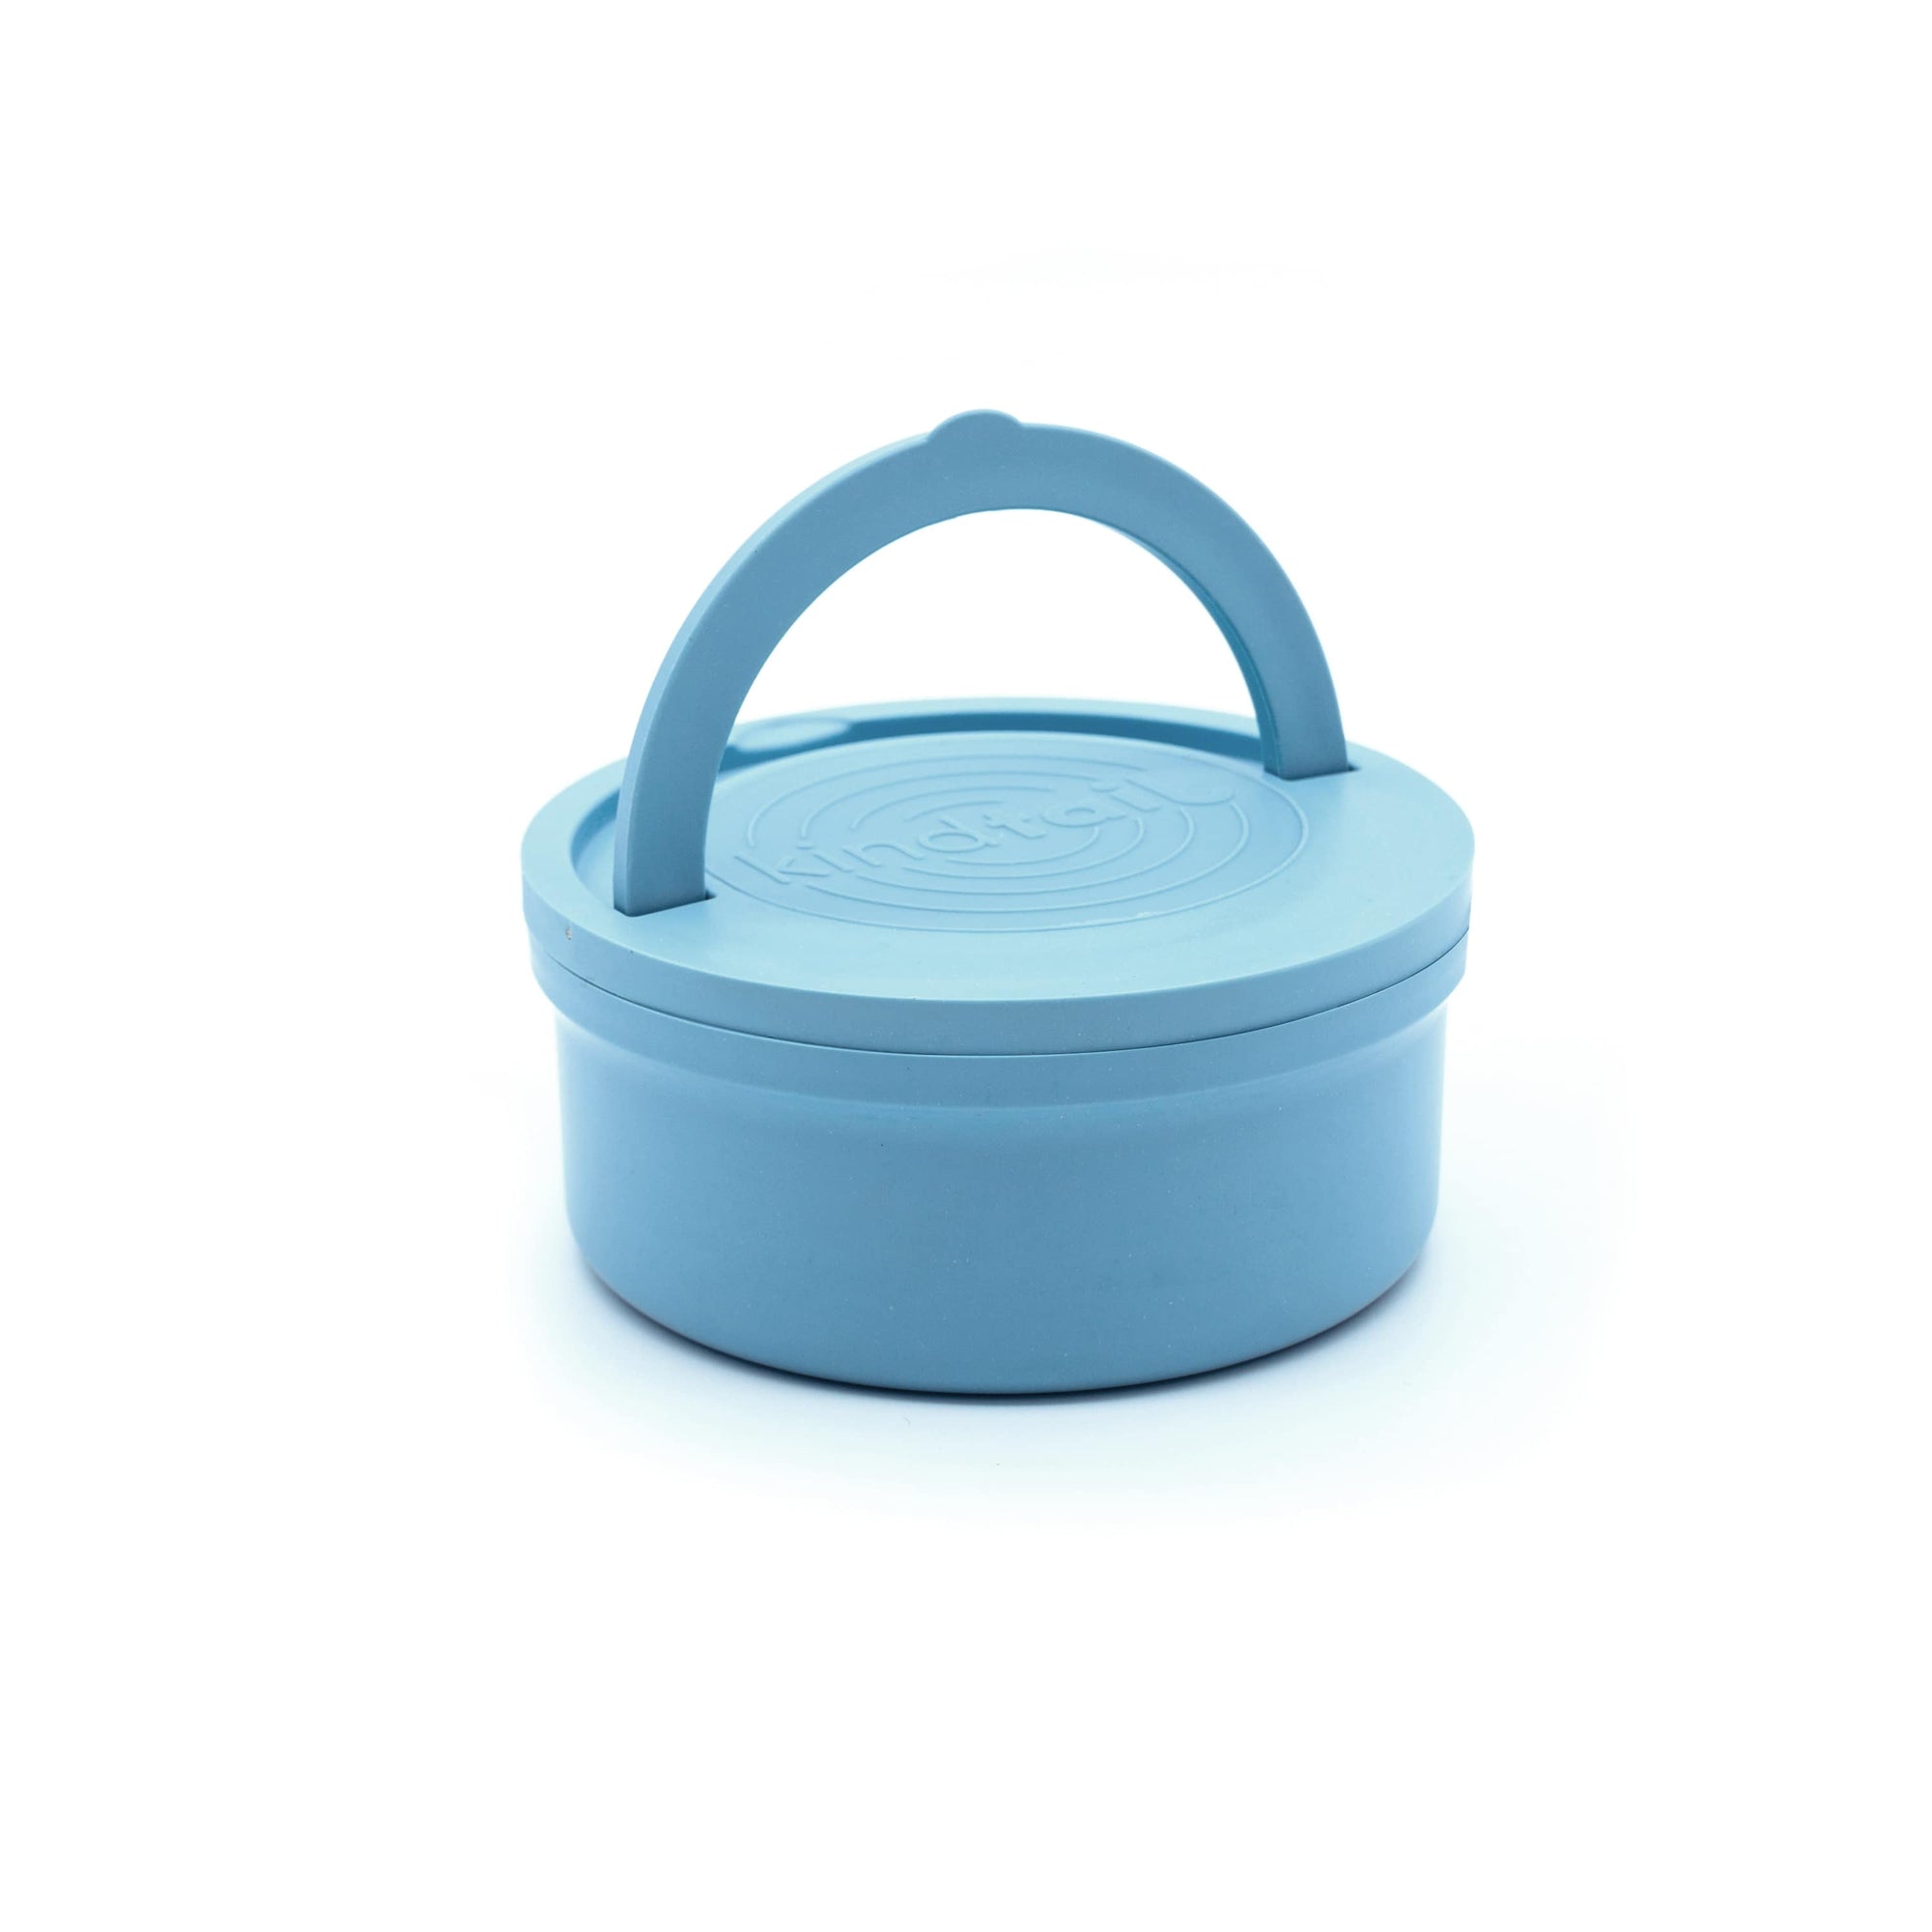 Portabowls | Portable travel & home bowl set - KindTail